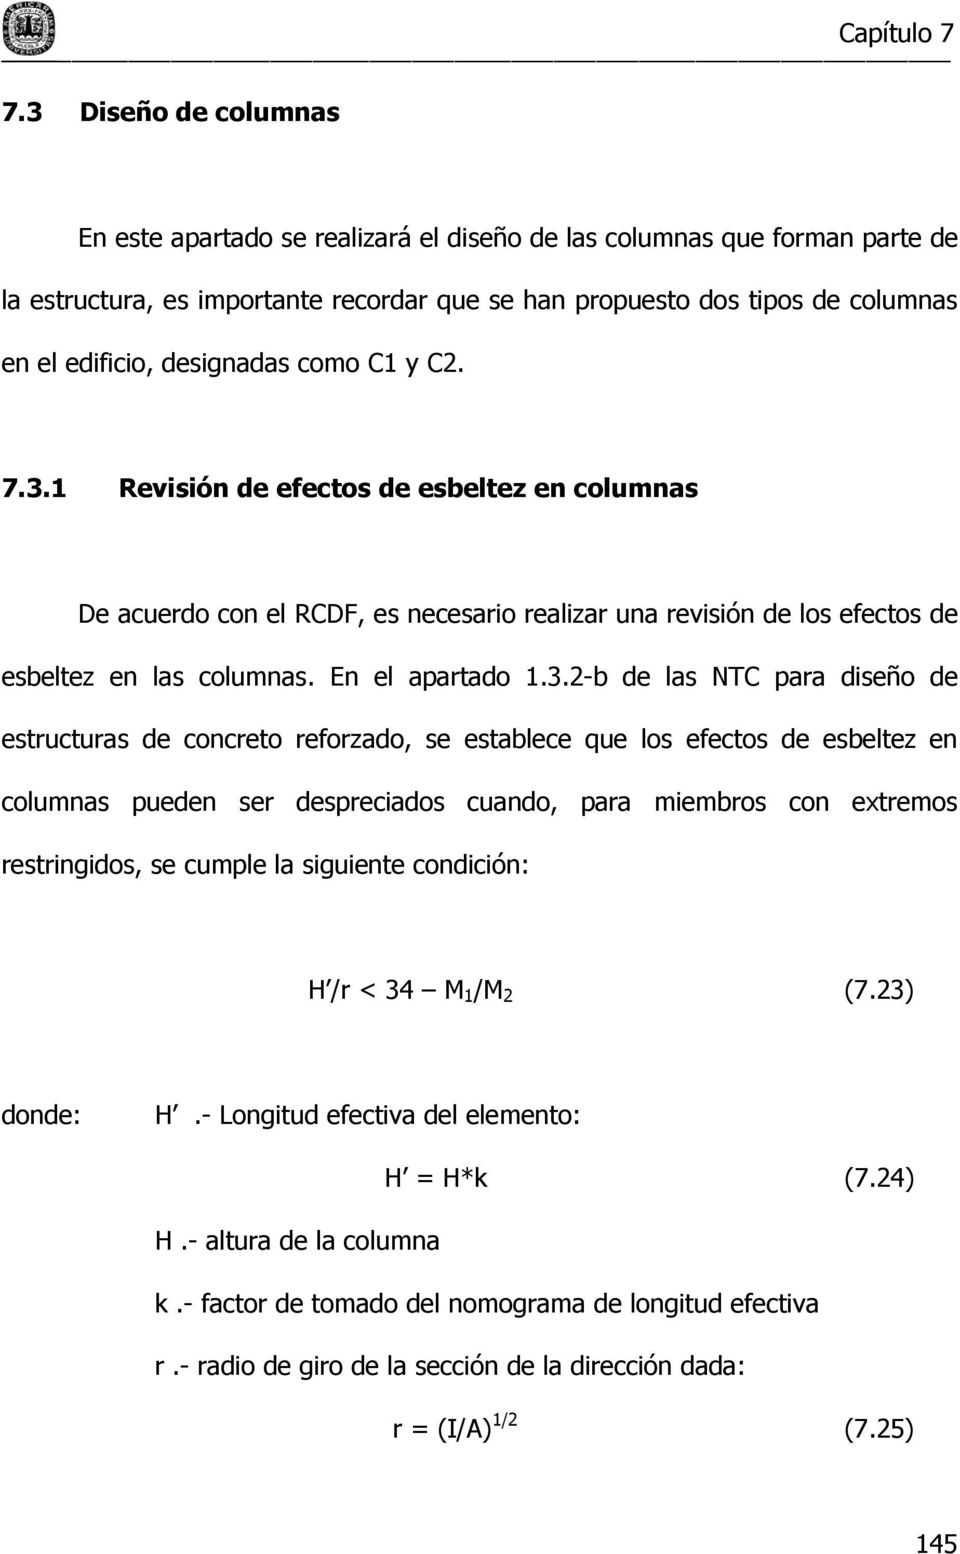 1 Revisión de efectos de esbeltez en columnas De acuerdo con el RCDF, es necesario realizar una revisión de los efectos de esbeltez en las columnas. En el apartado 1.3.